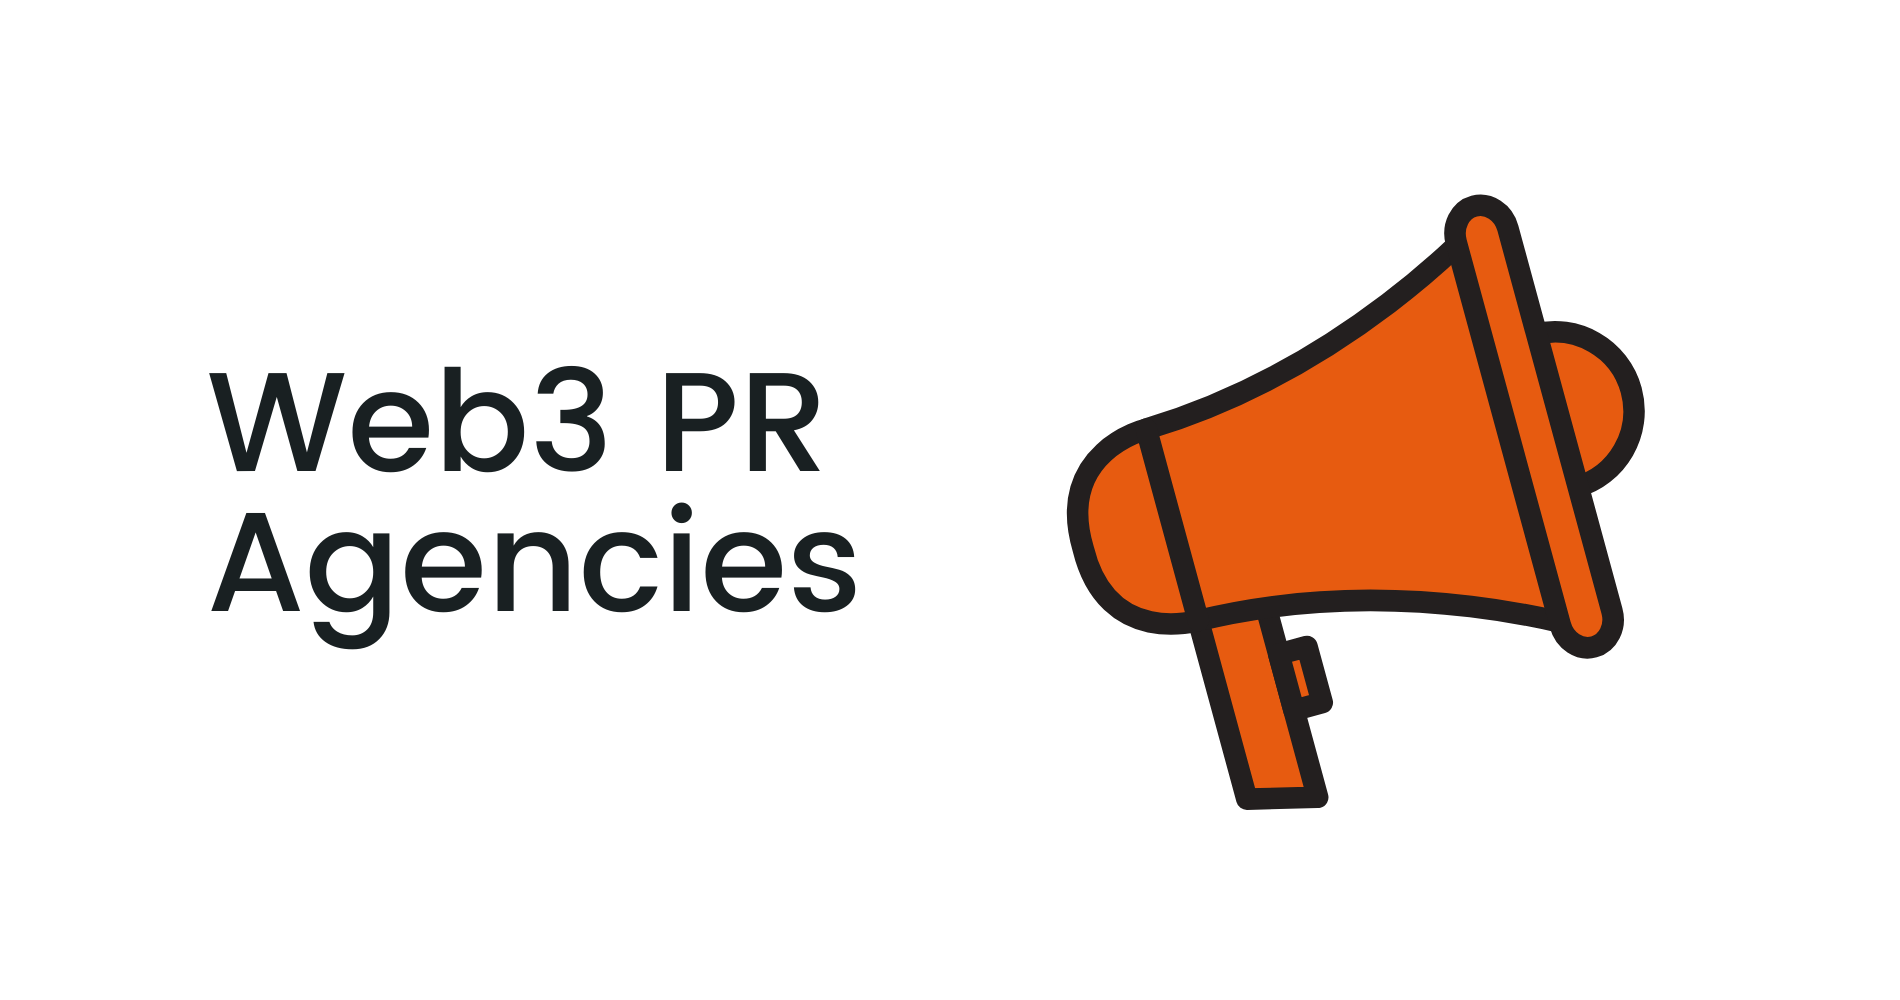 Web3 PR Agencies